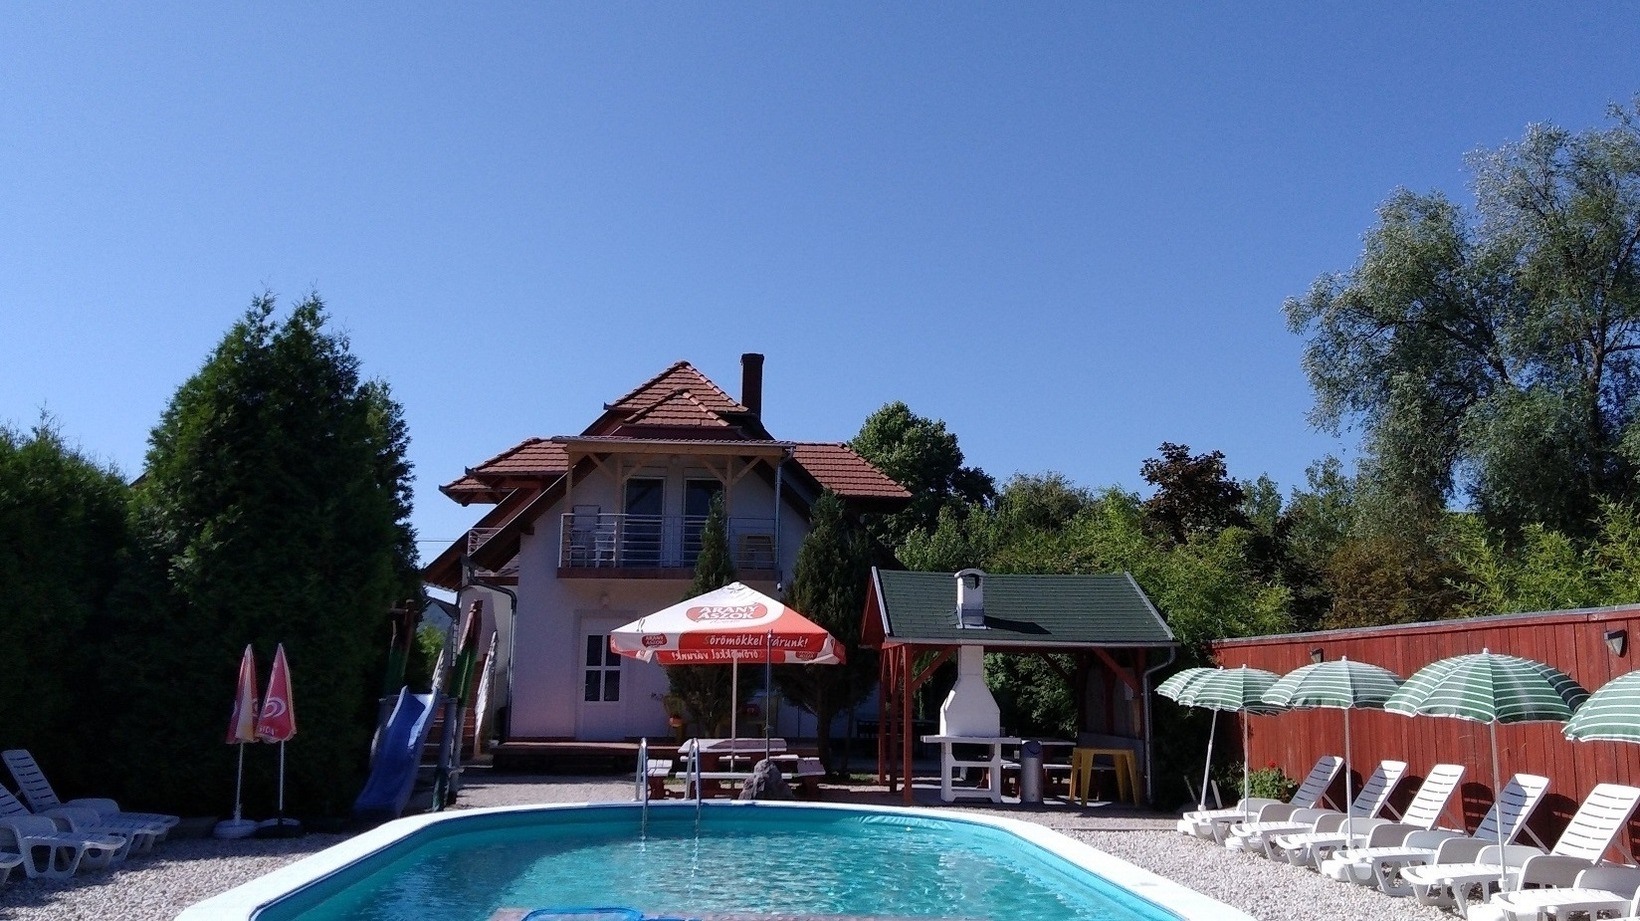 Ferienhaus direkt am See mit Pool, WLAN, Spielplat Ferienhaus in Ungarn